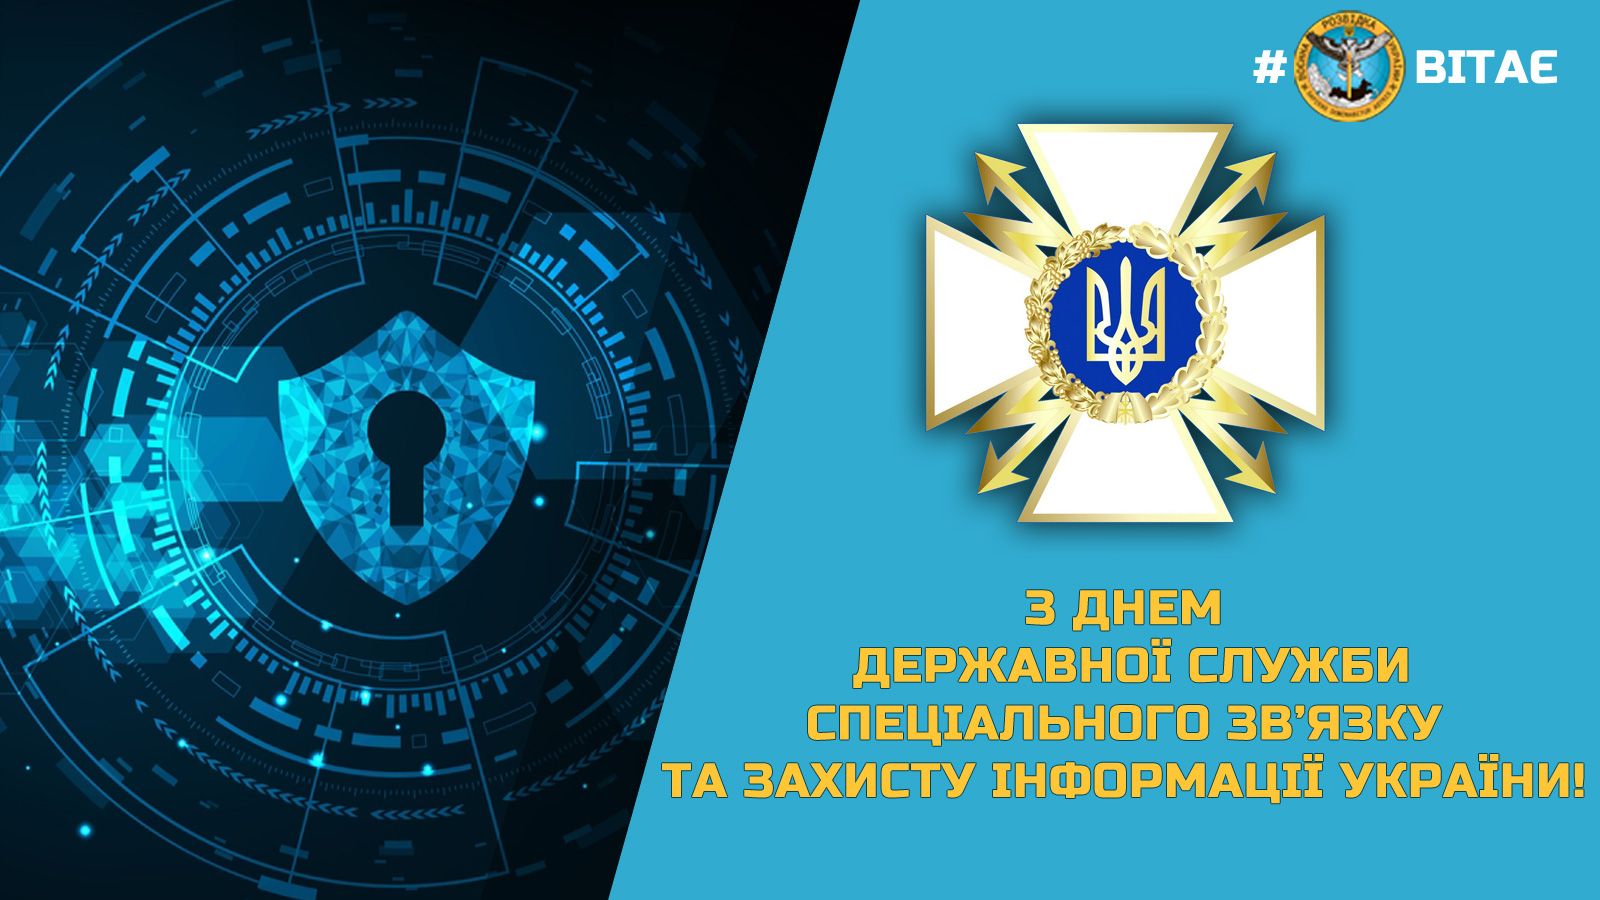 В Україні відзначають День Державної служби спеціального зв’язку та захисту інформації України